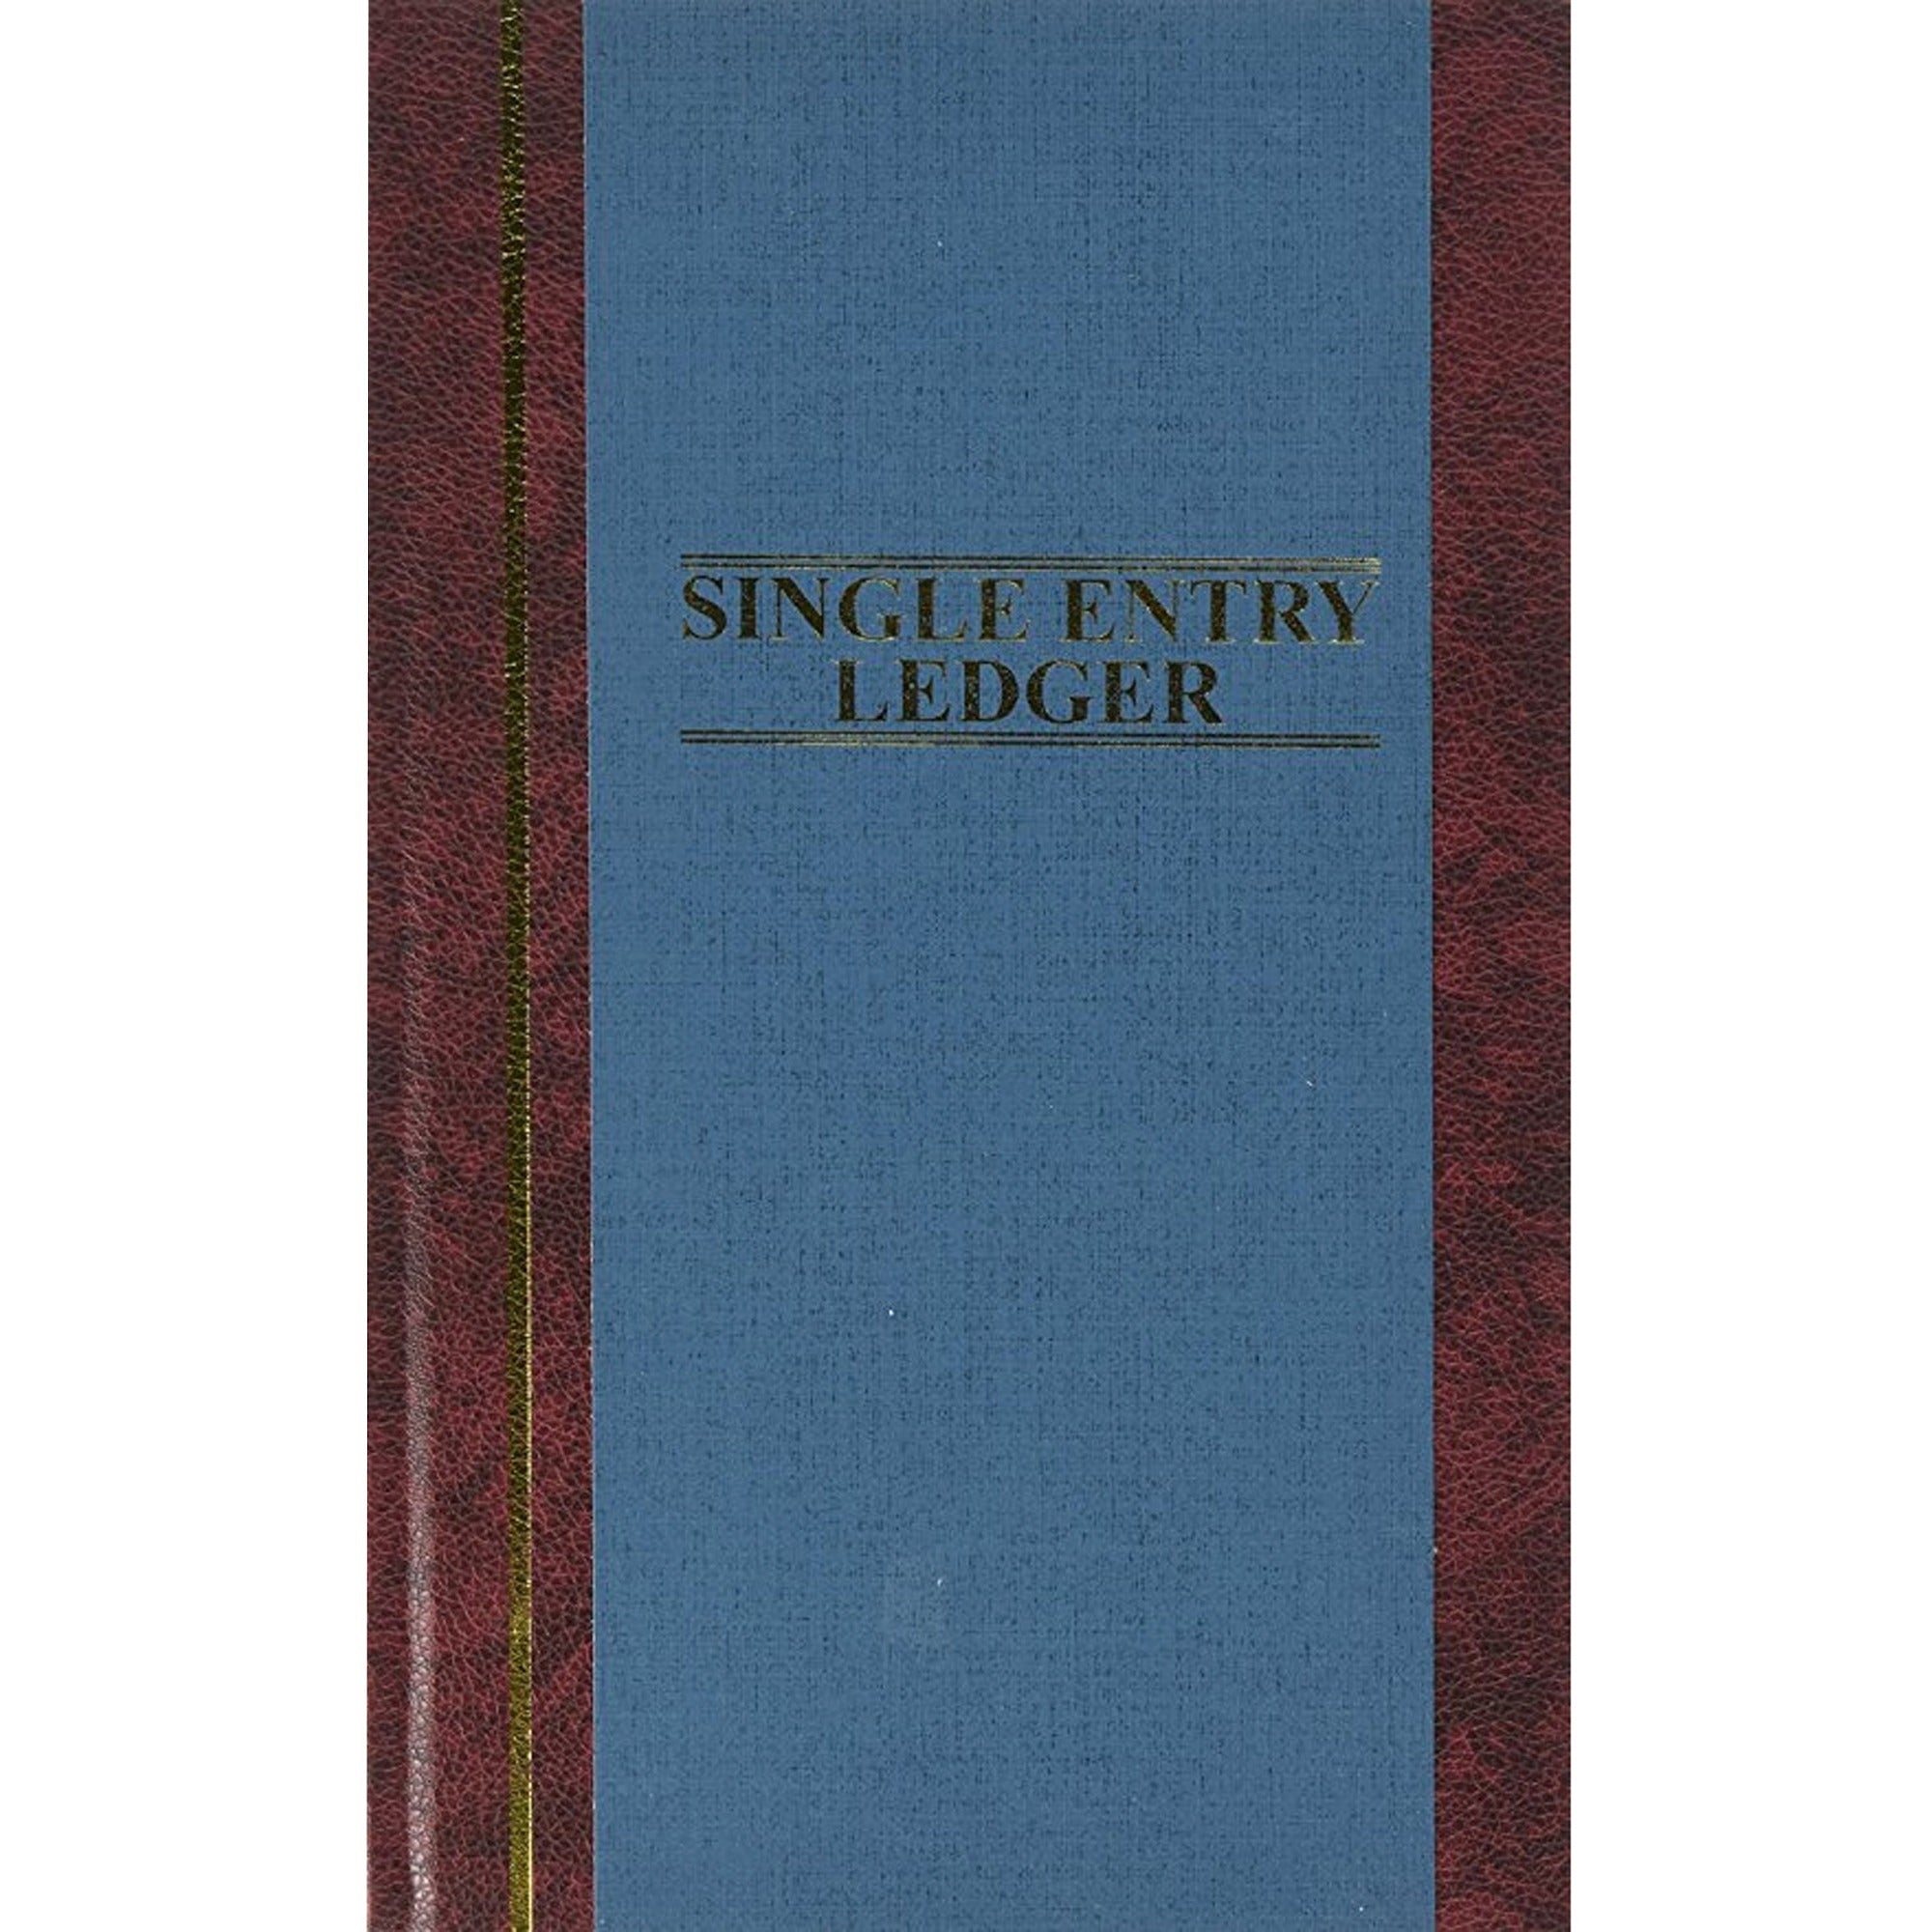 Wilson Jones S300 Single Entry Ledger Account Journal - 150 Sheet(s) - 7.25" x 11.75" Sheet Size - Blue - White Sheet(s) - Blue Cover - 1 Each - 